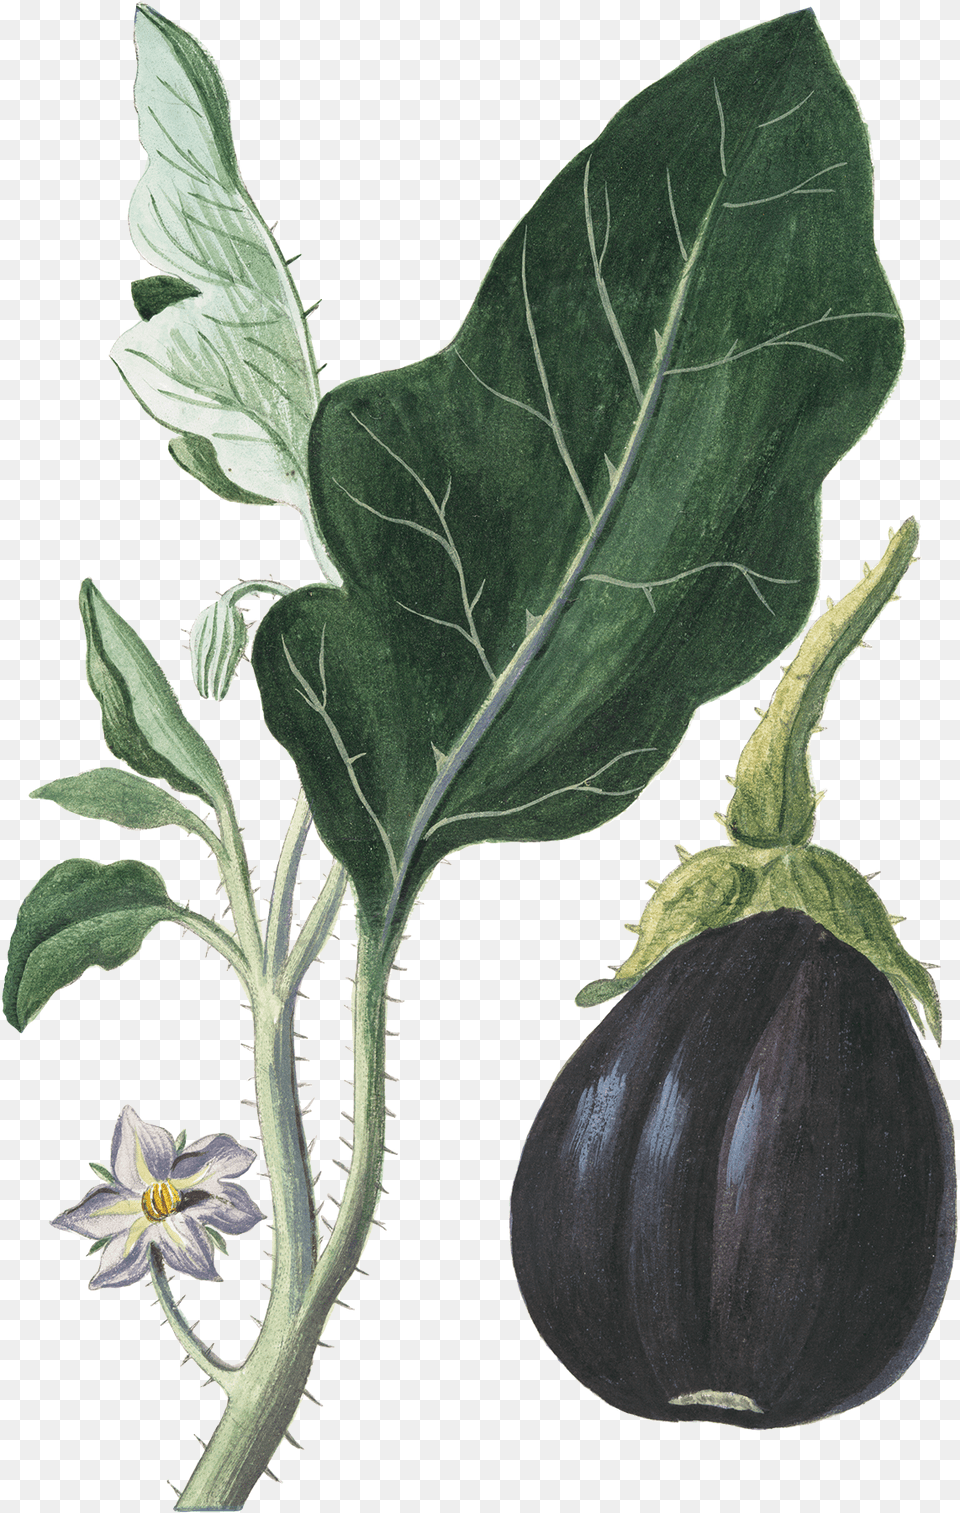 Eggplant Vegetable Botanical Illustration Botany Botanical Vegetable Illustration, Food, Plant, Produce Png Image